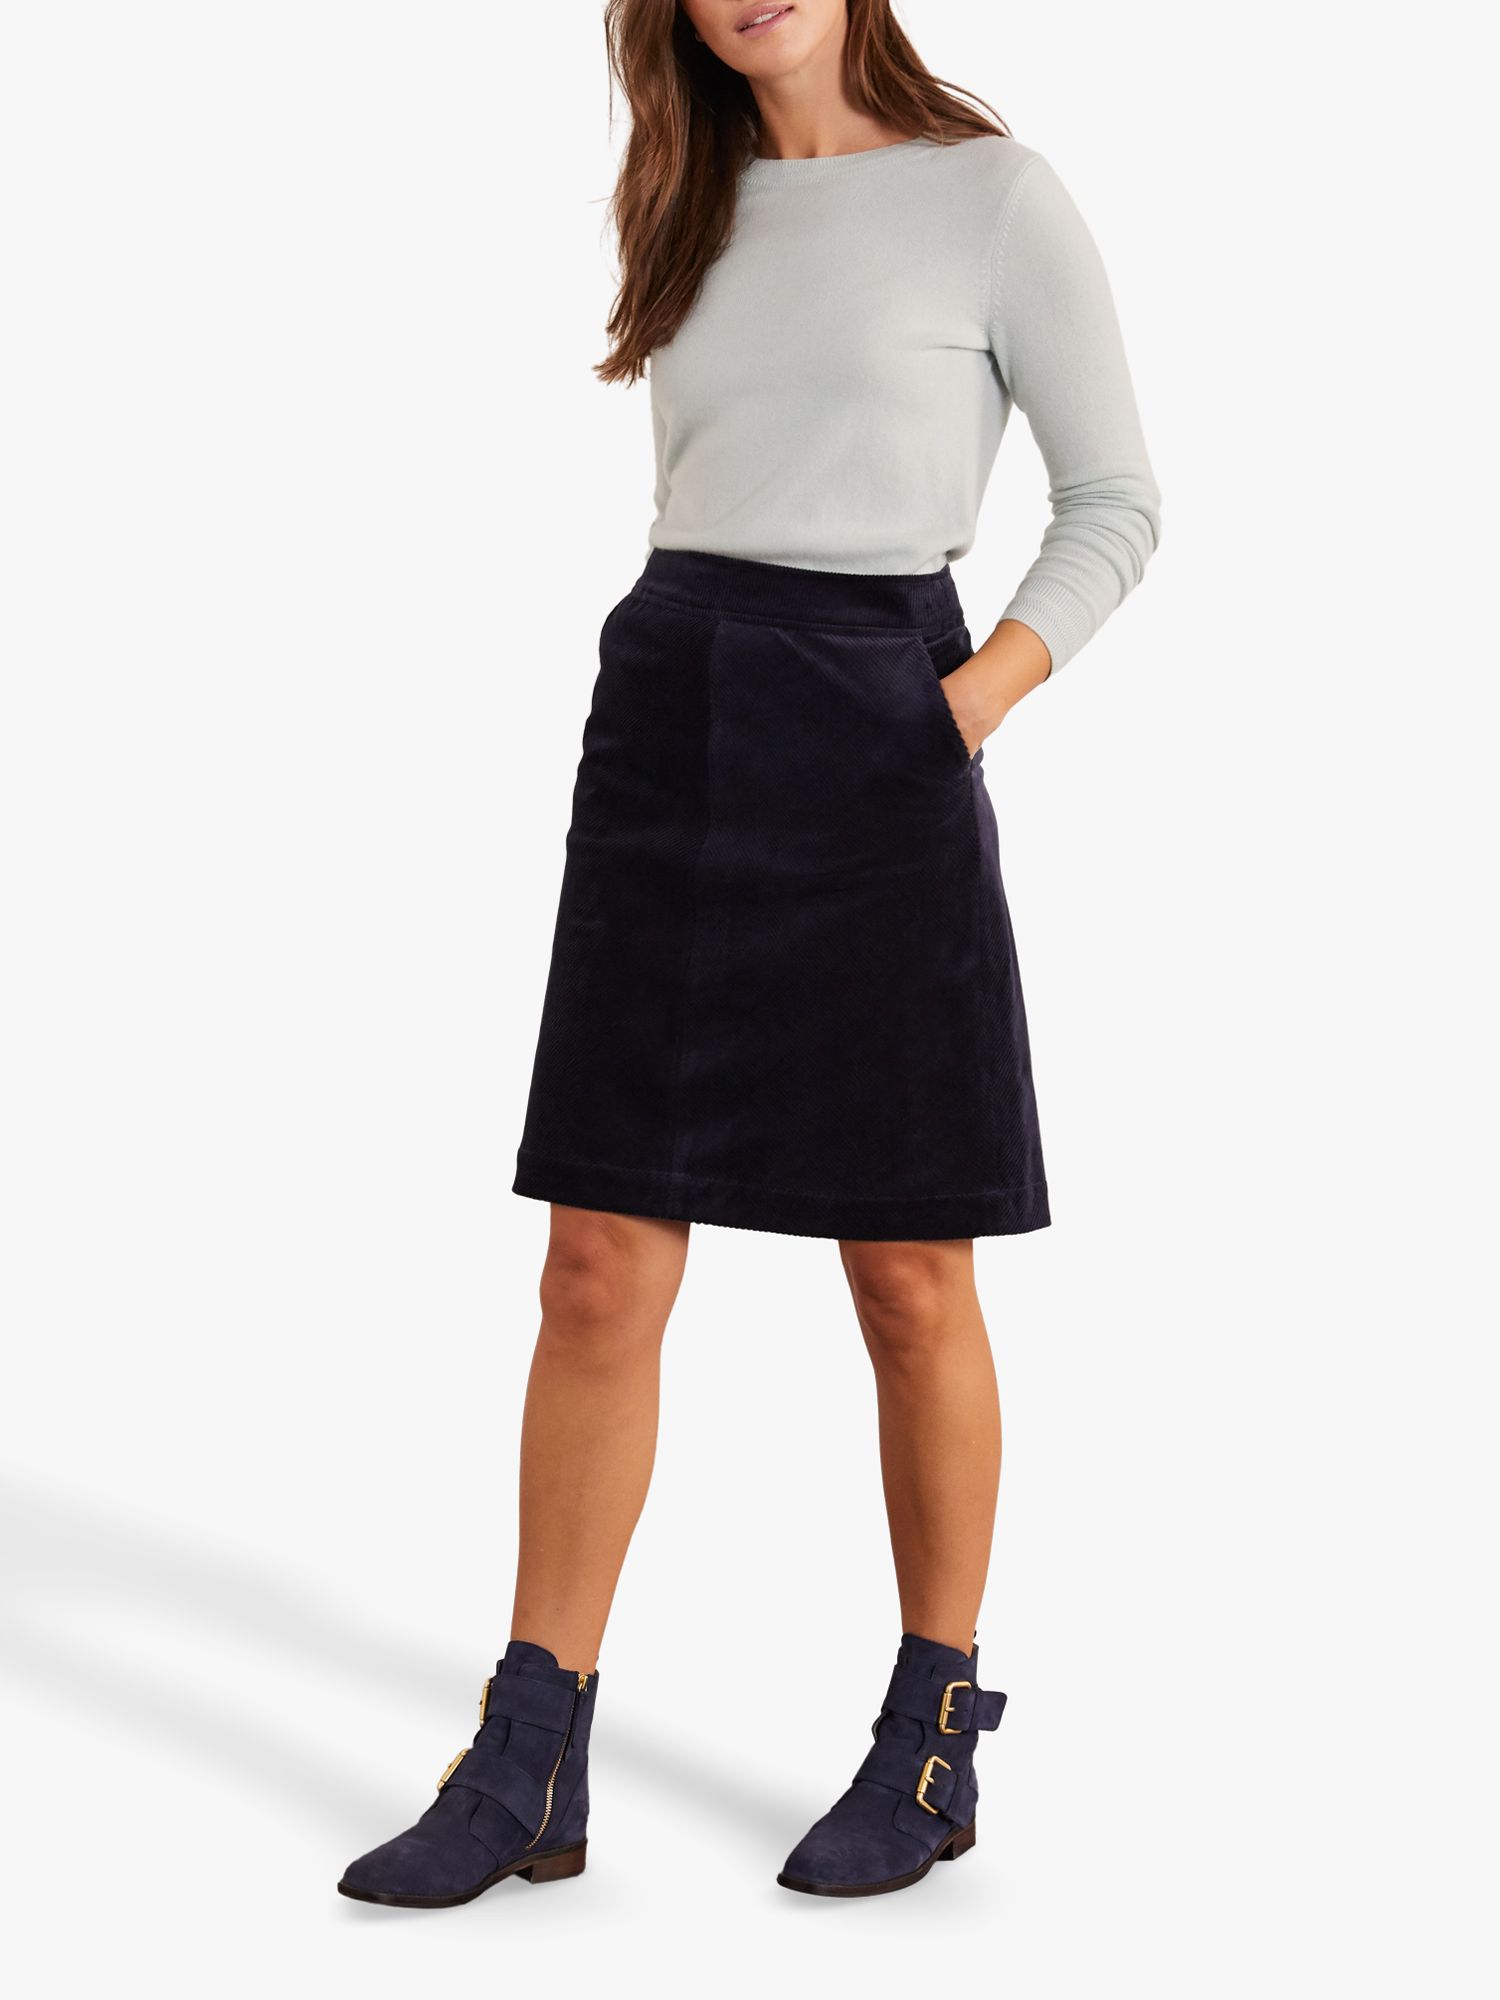 Boden Beresford Cord Skirt